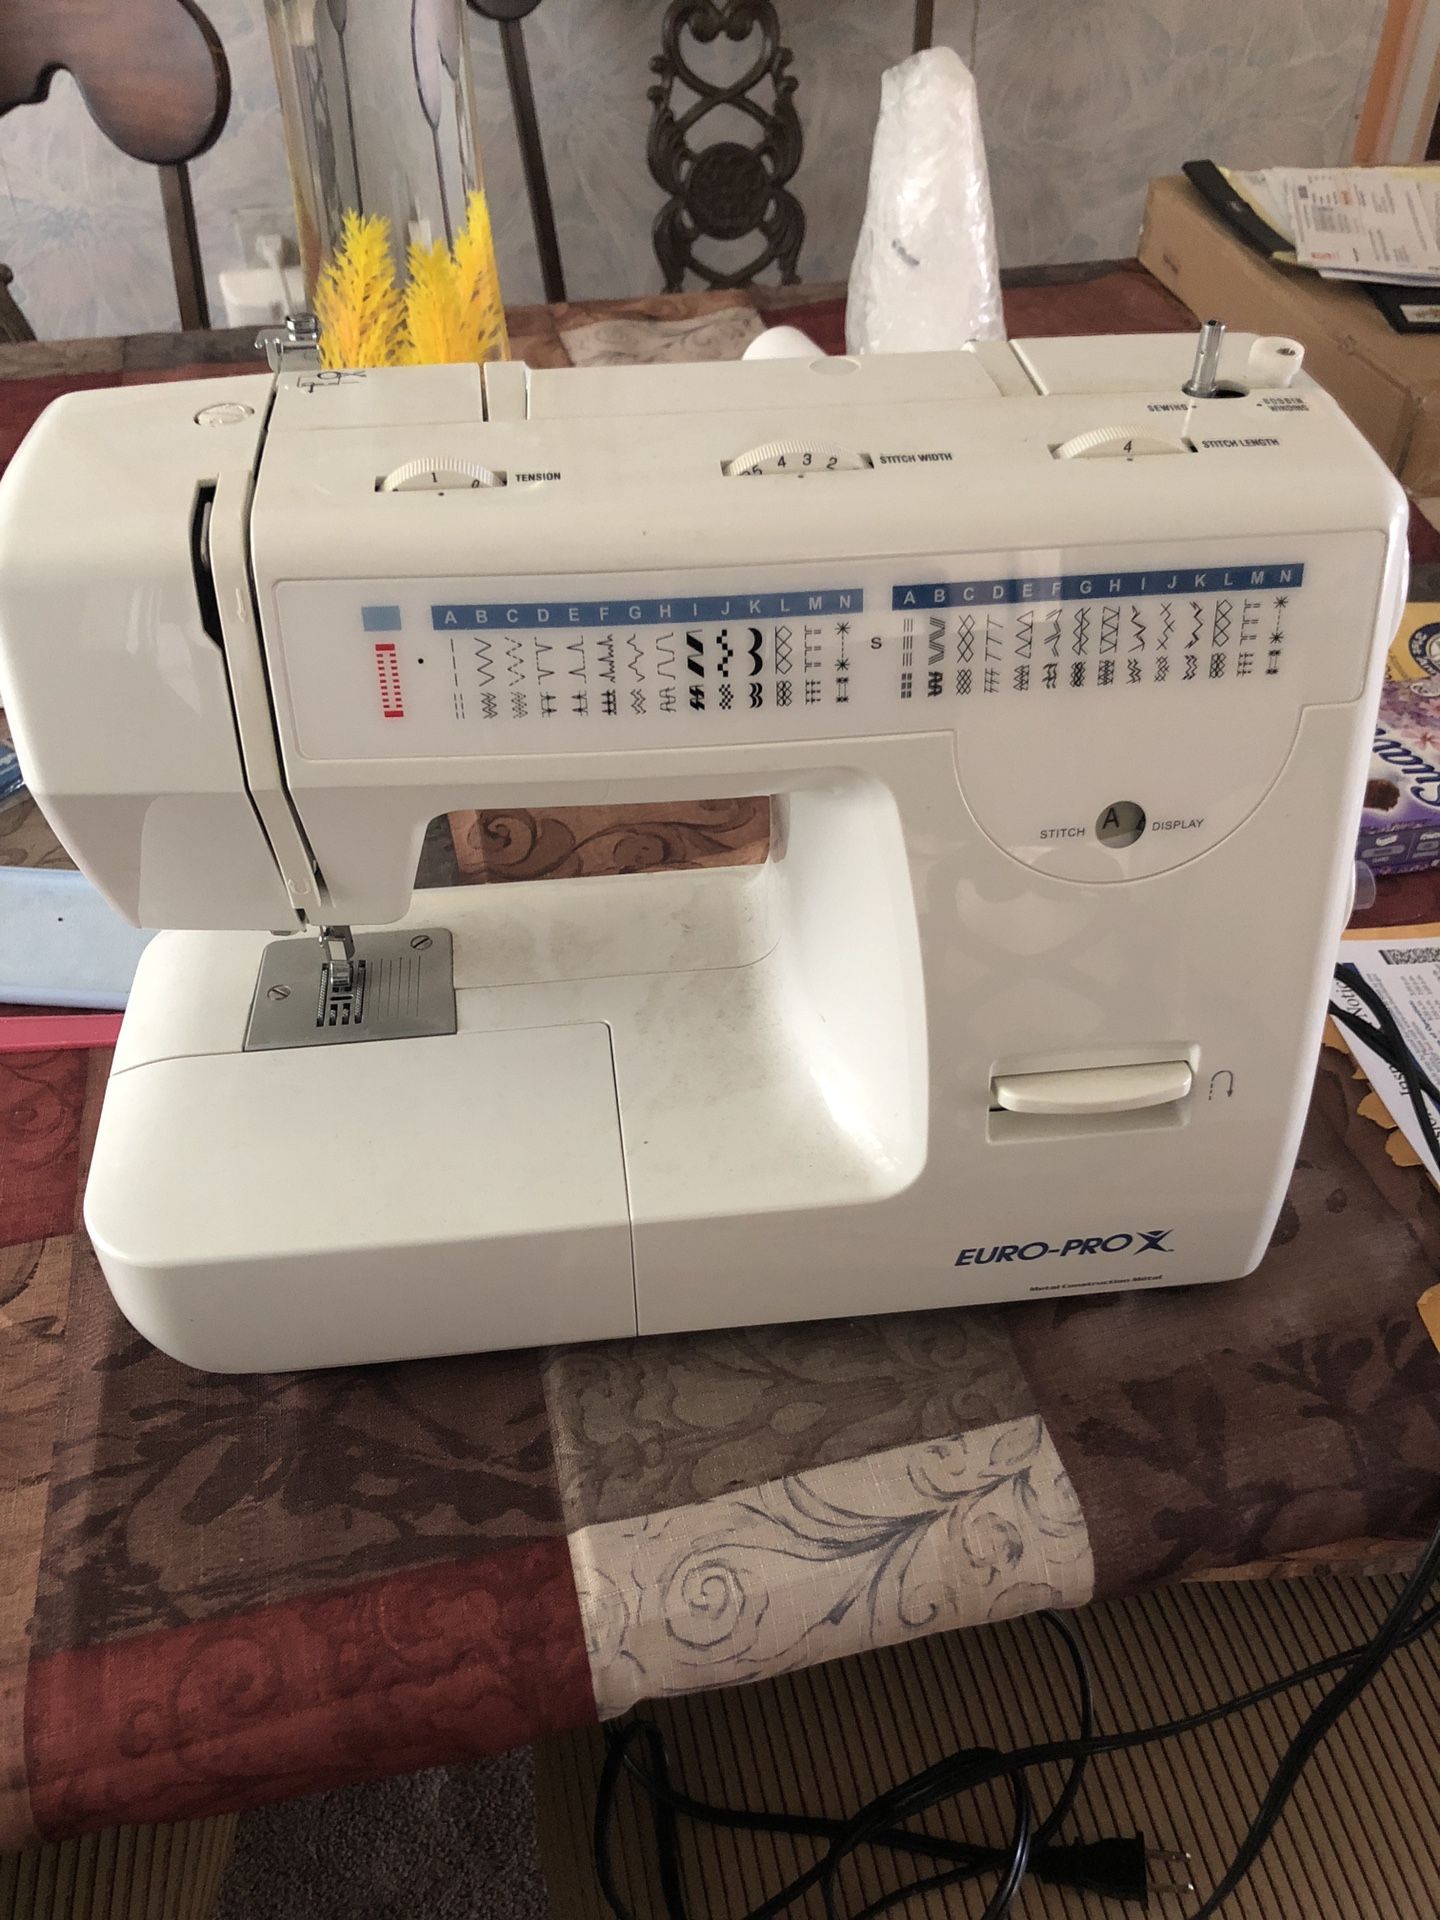 Euro-Pro sewing machine